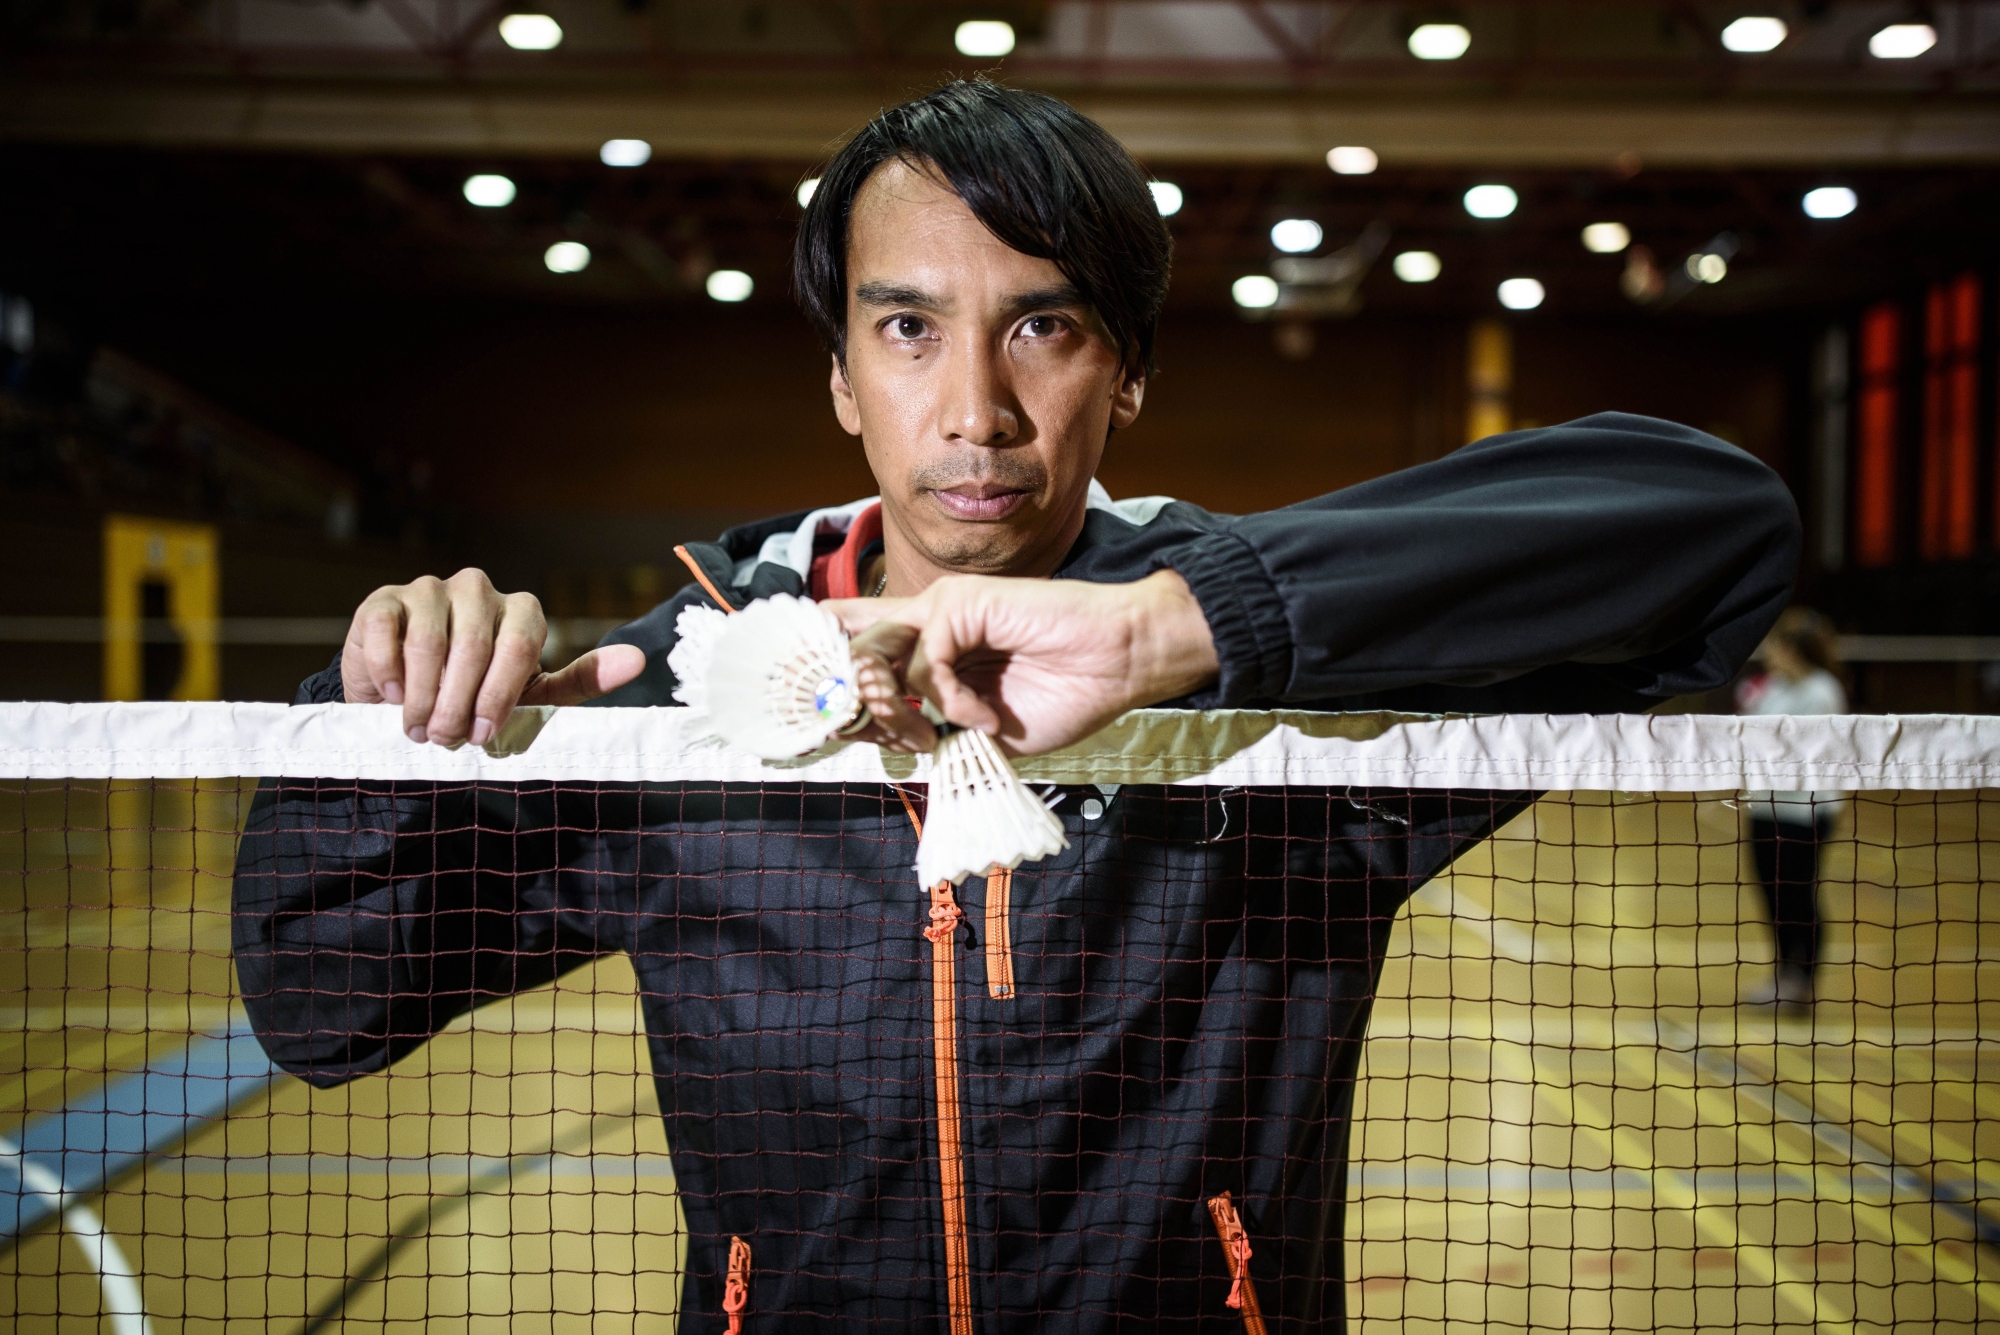 Hào Phan Thanh a peu à peu lâché les volants de badminton pour gérer les coulisses du club.